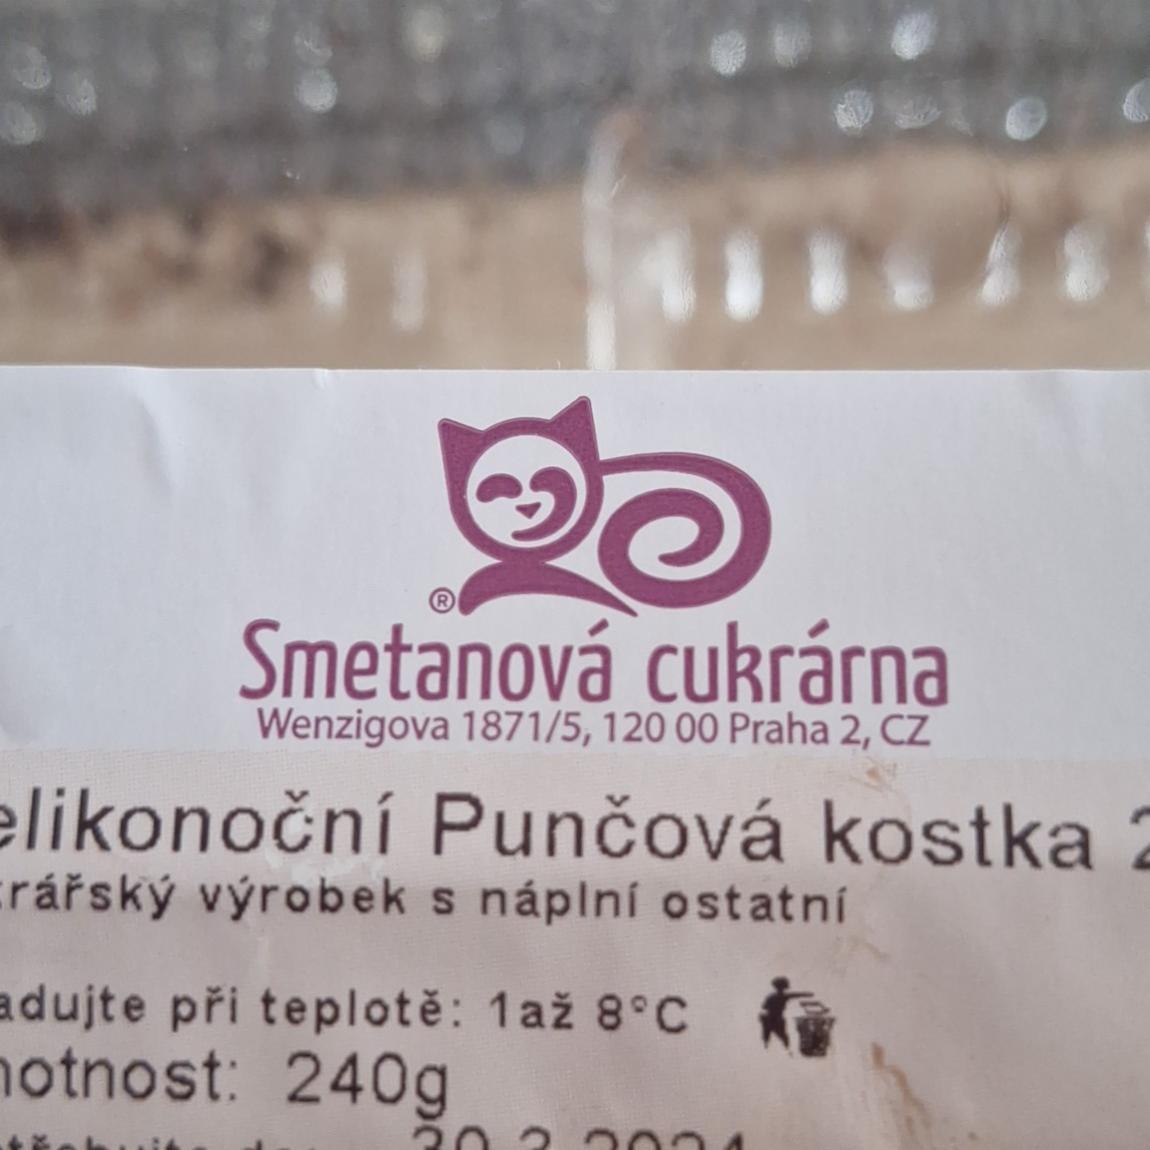 Fotografie - Velikonoční punčová kostka Smetanová cukrárna